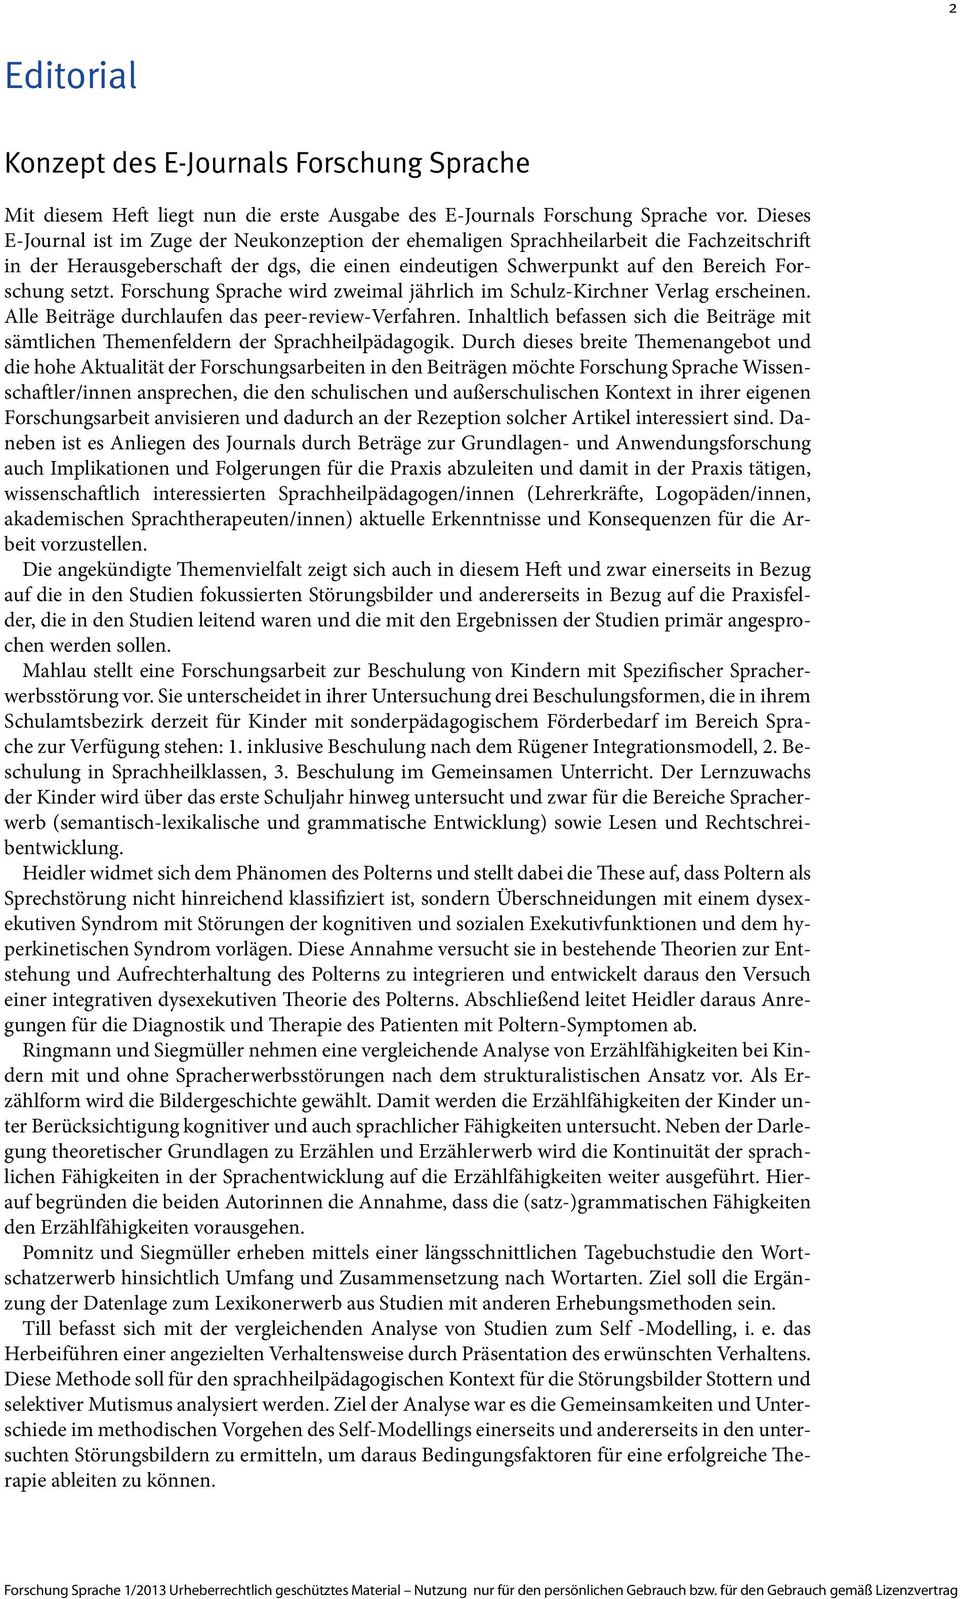 Forschung Sprache wird zweimal jährlich im Schulz-Kirchner Verlag erscheinen. Alle Beiträge durchlaufen das peer-review-verfahren.